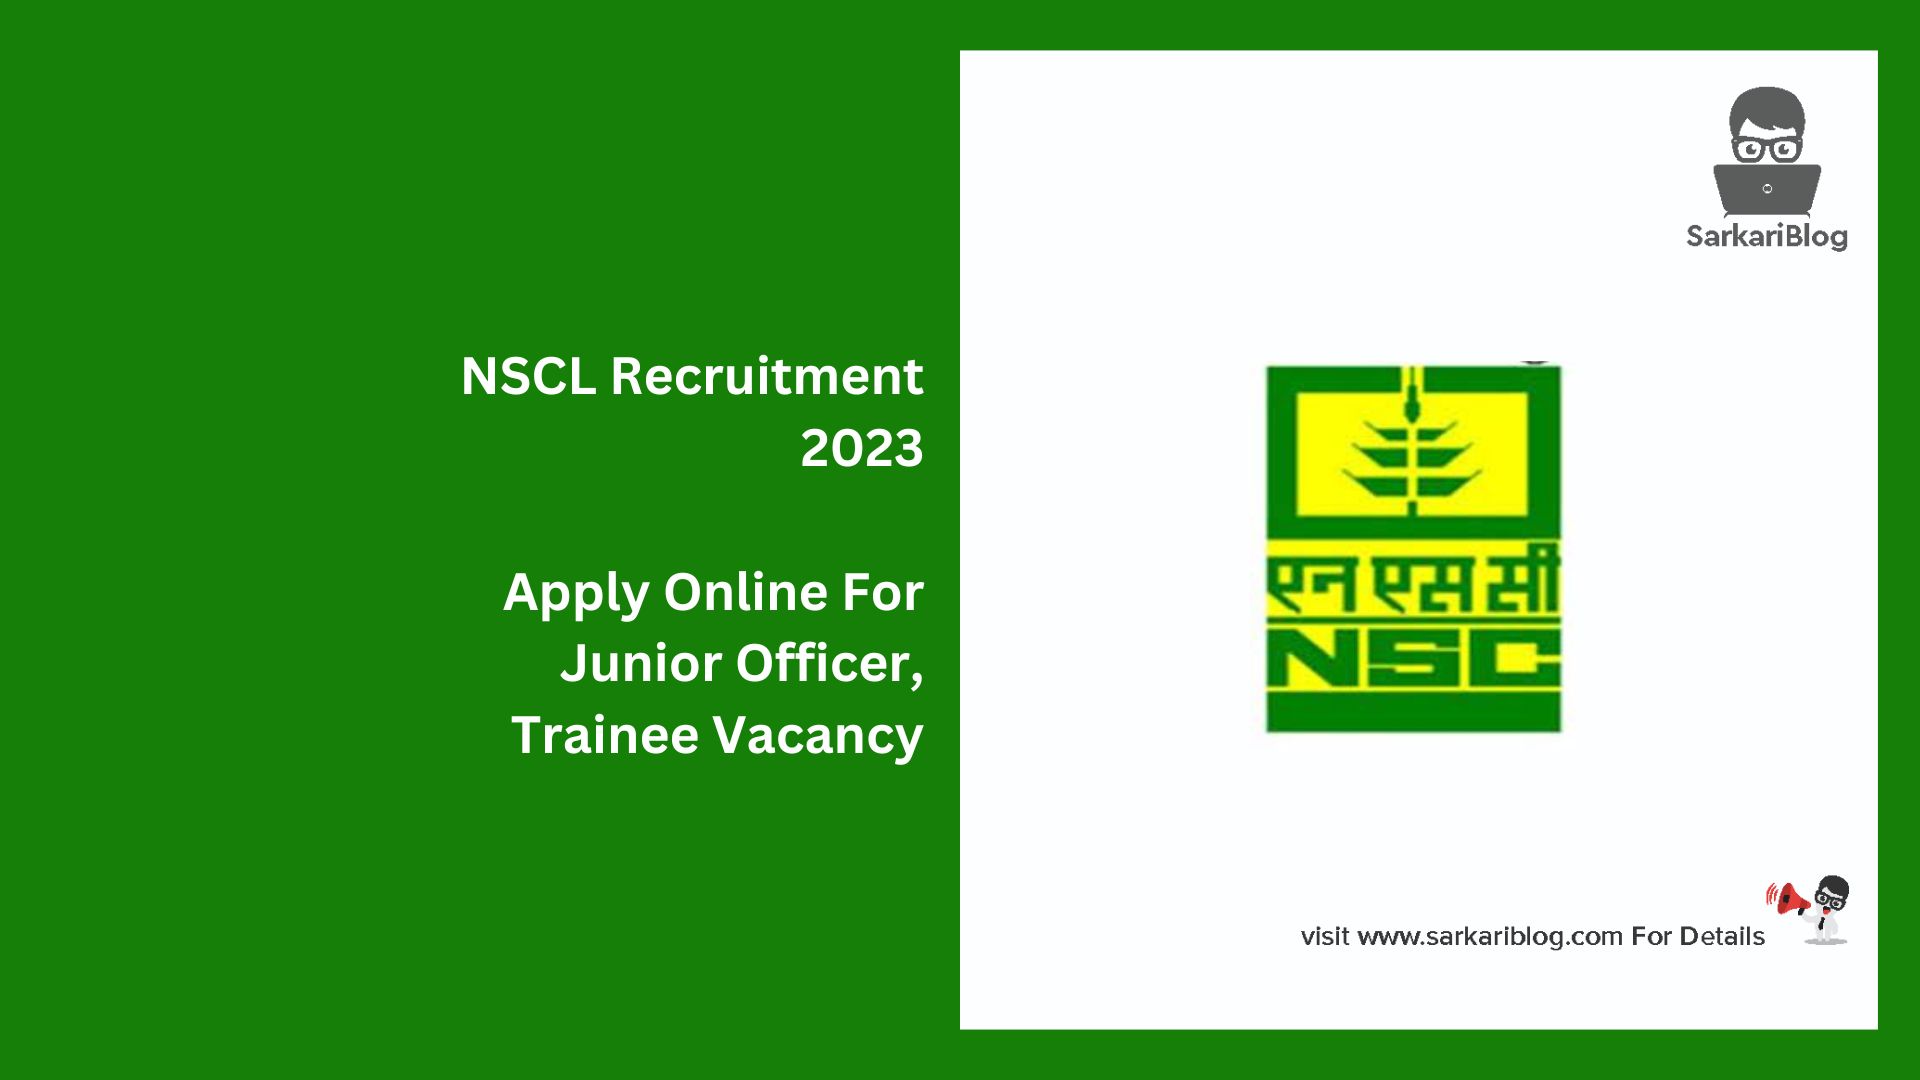 NSCL Recruitment 2023